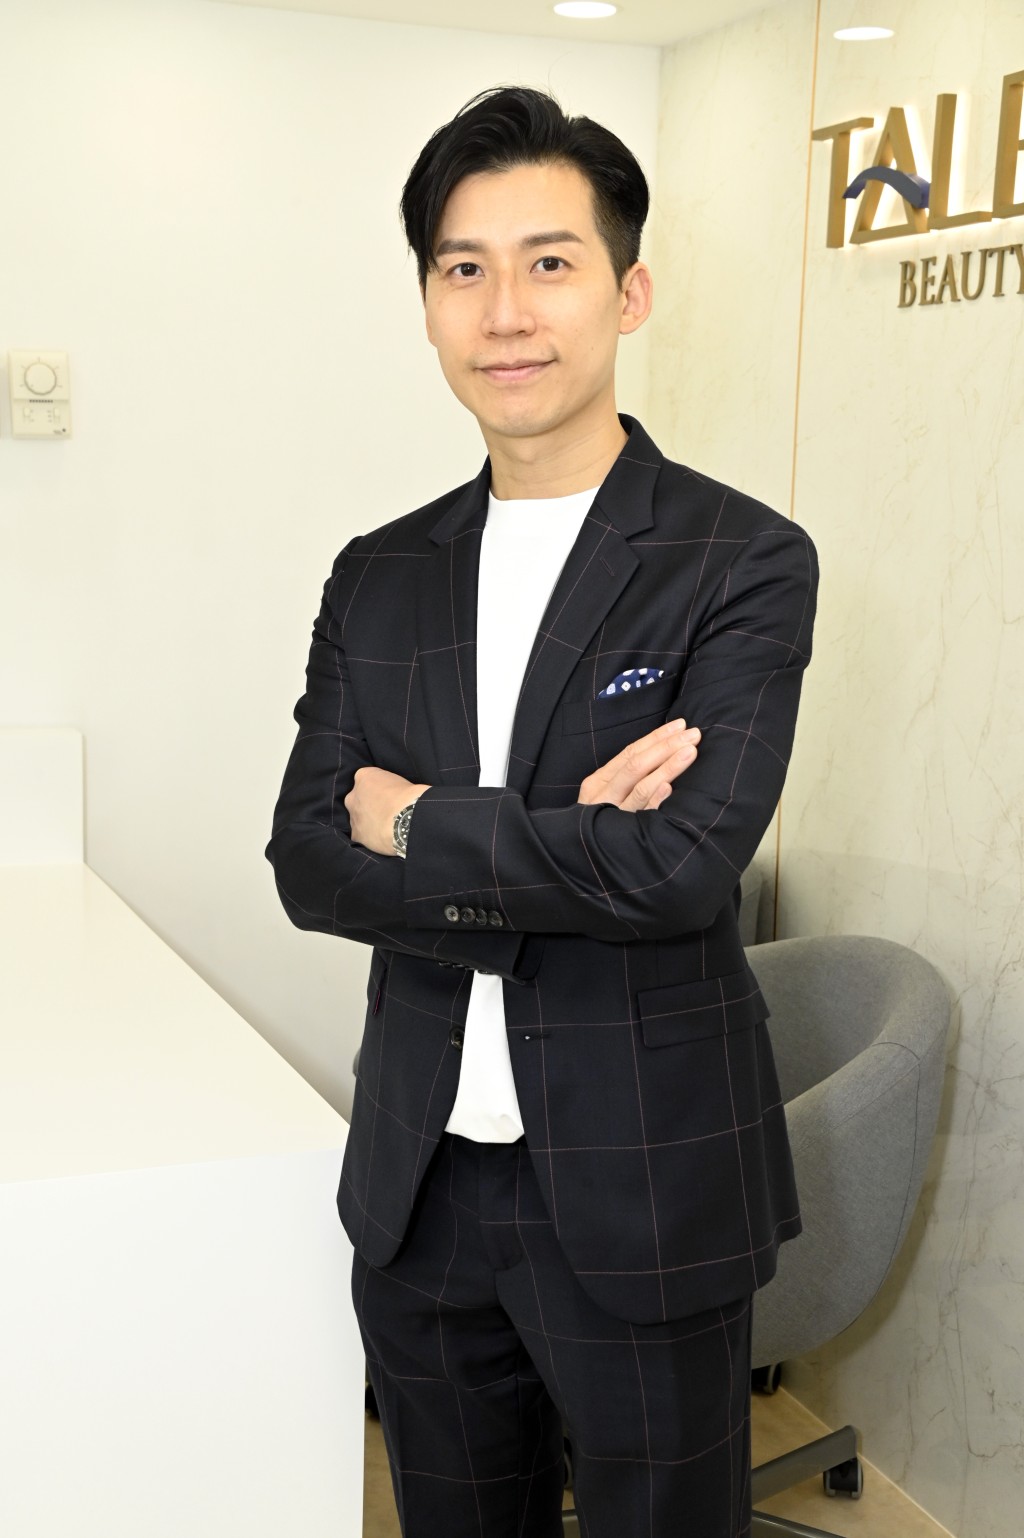 擁有15年專業化妝經驗的Jeff Tang是明星御用化妝師。